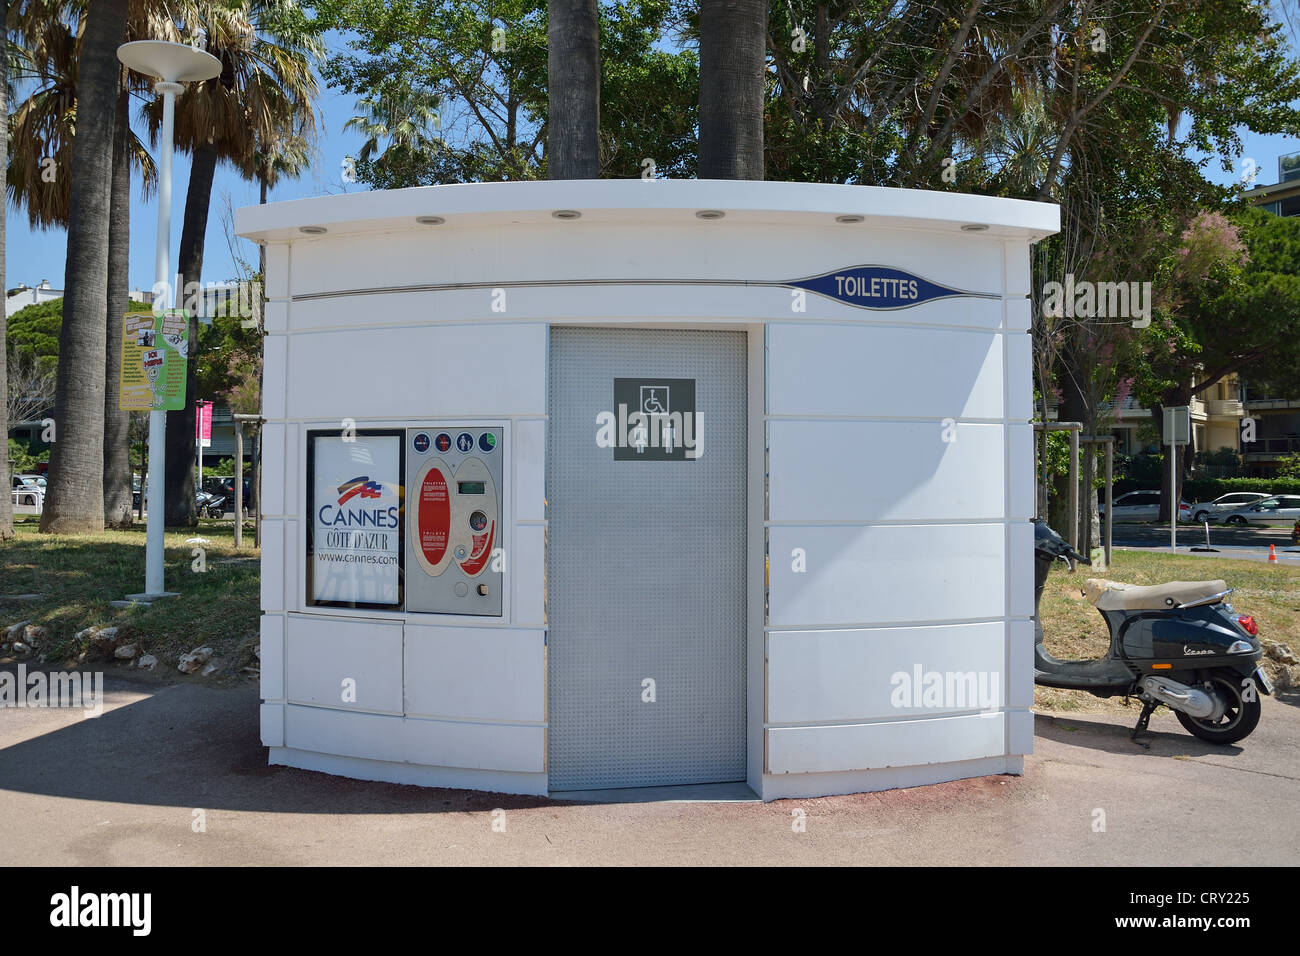 Promenade coin-operated toilette (toilet), Bijou Plage, Cannes, Côte d'Azur, Alpes-Maritimes, Provence-Alpes-Côte d'Azur, France Stock Photo